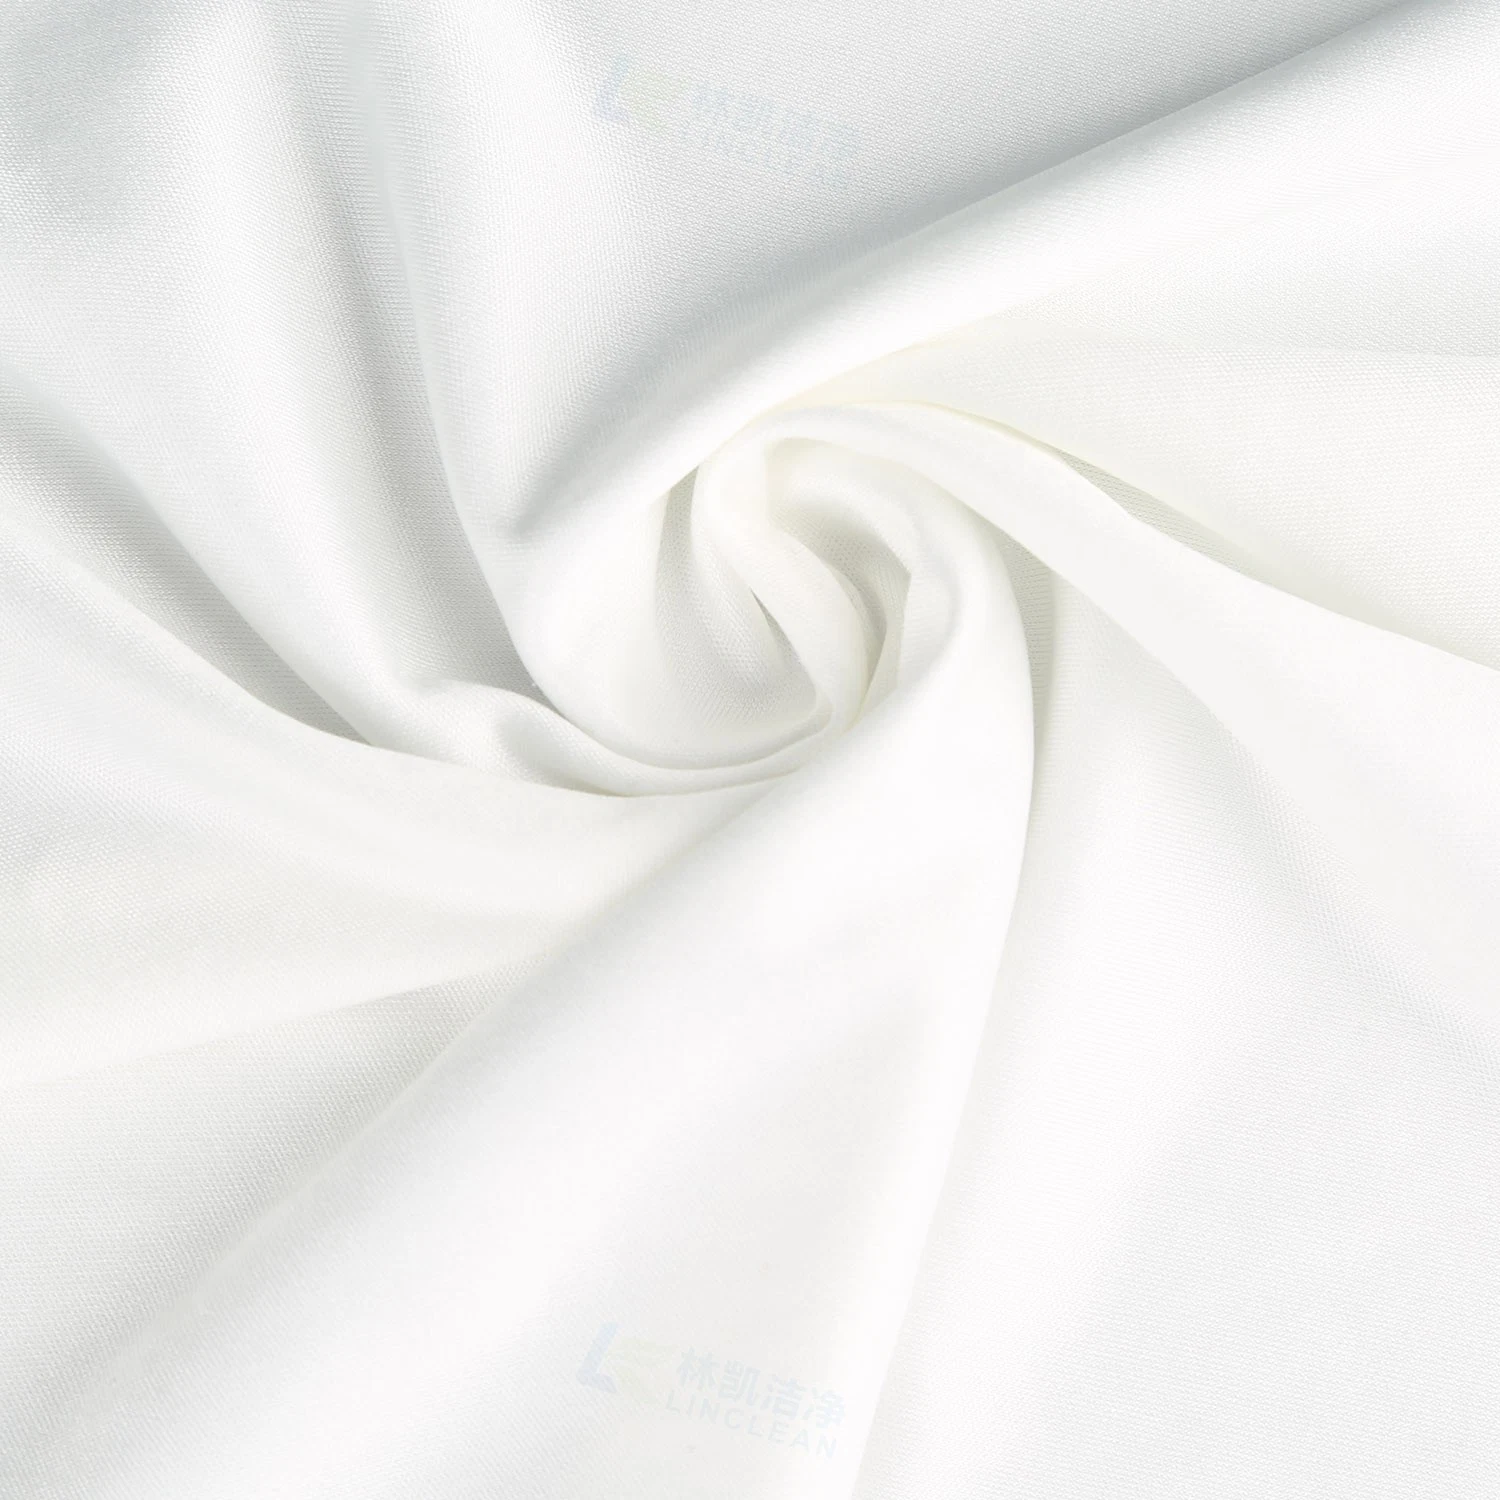 Novo pano de microfibras sem pó toalhetes de limpeza para tecidos não tecidos para salas brancas Limpa pára-brisas